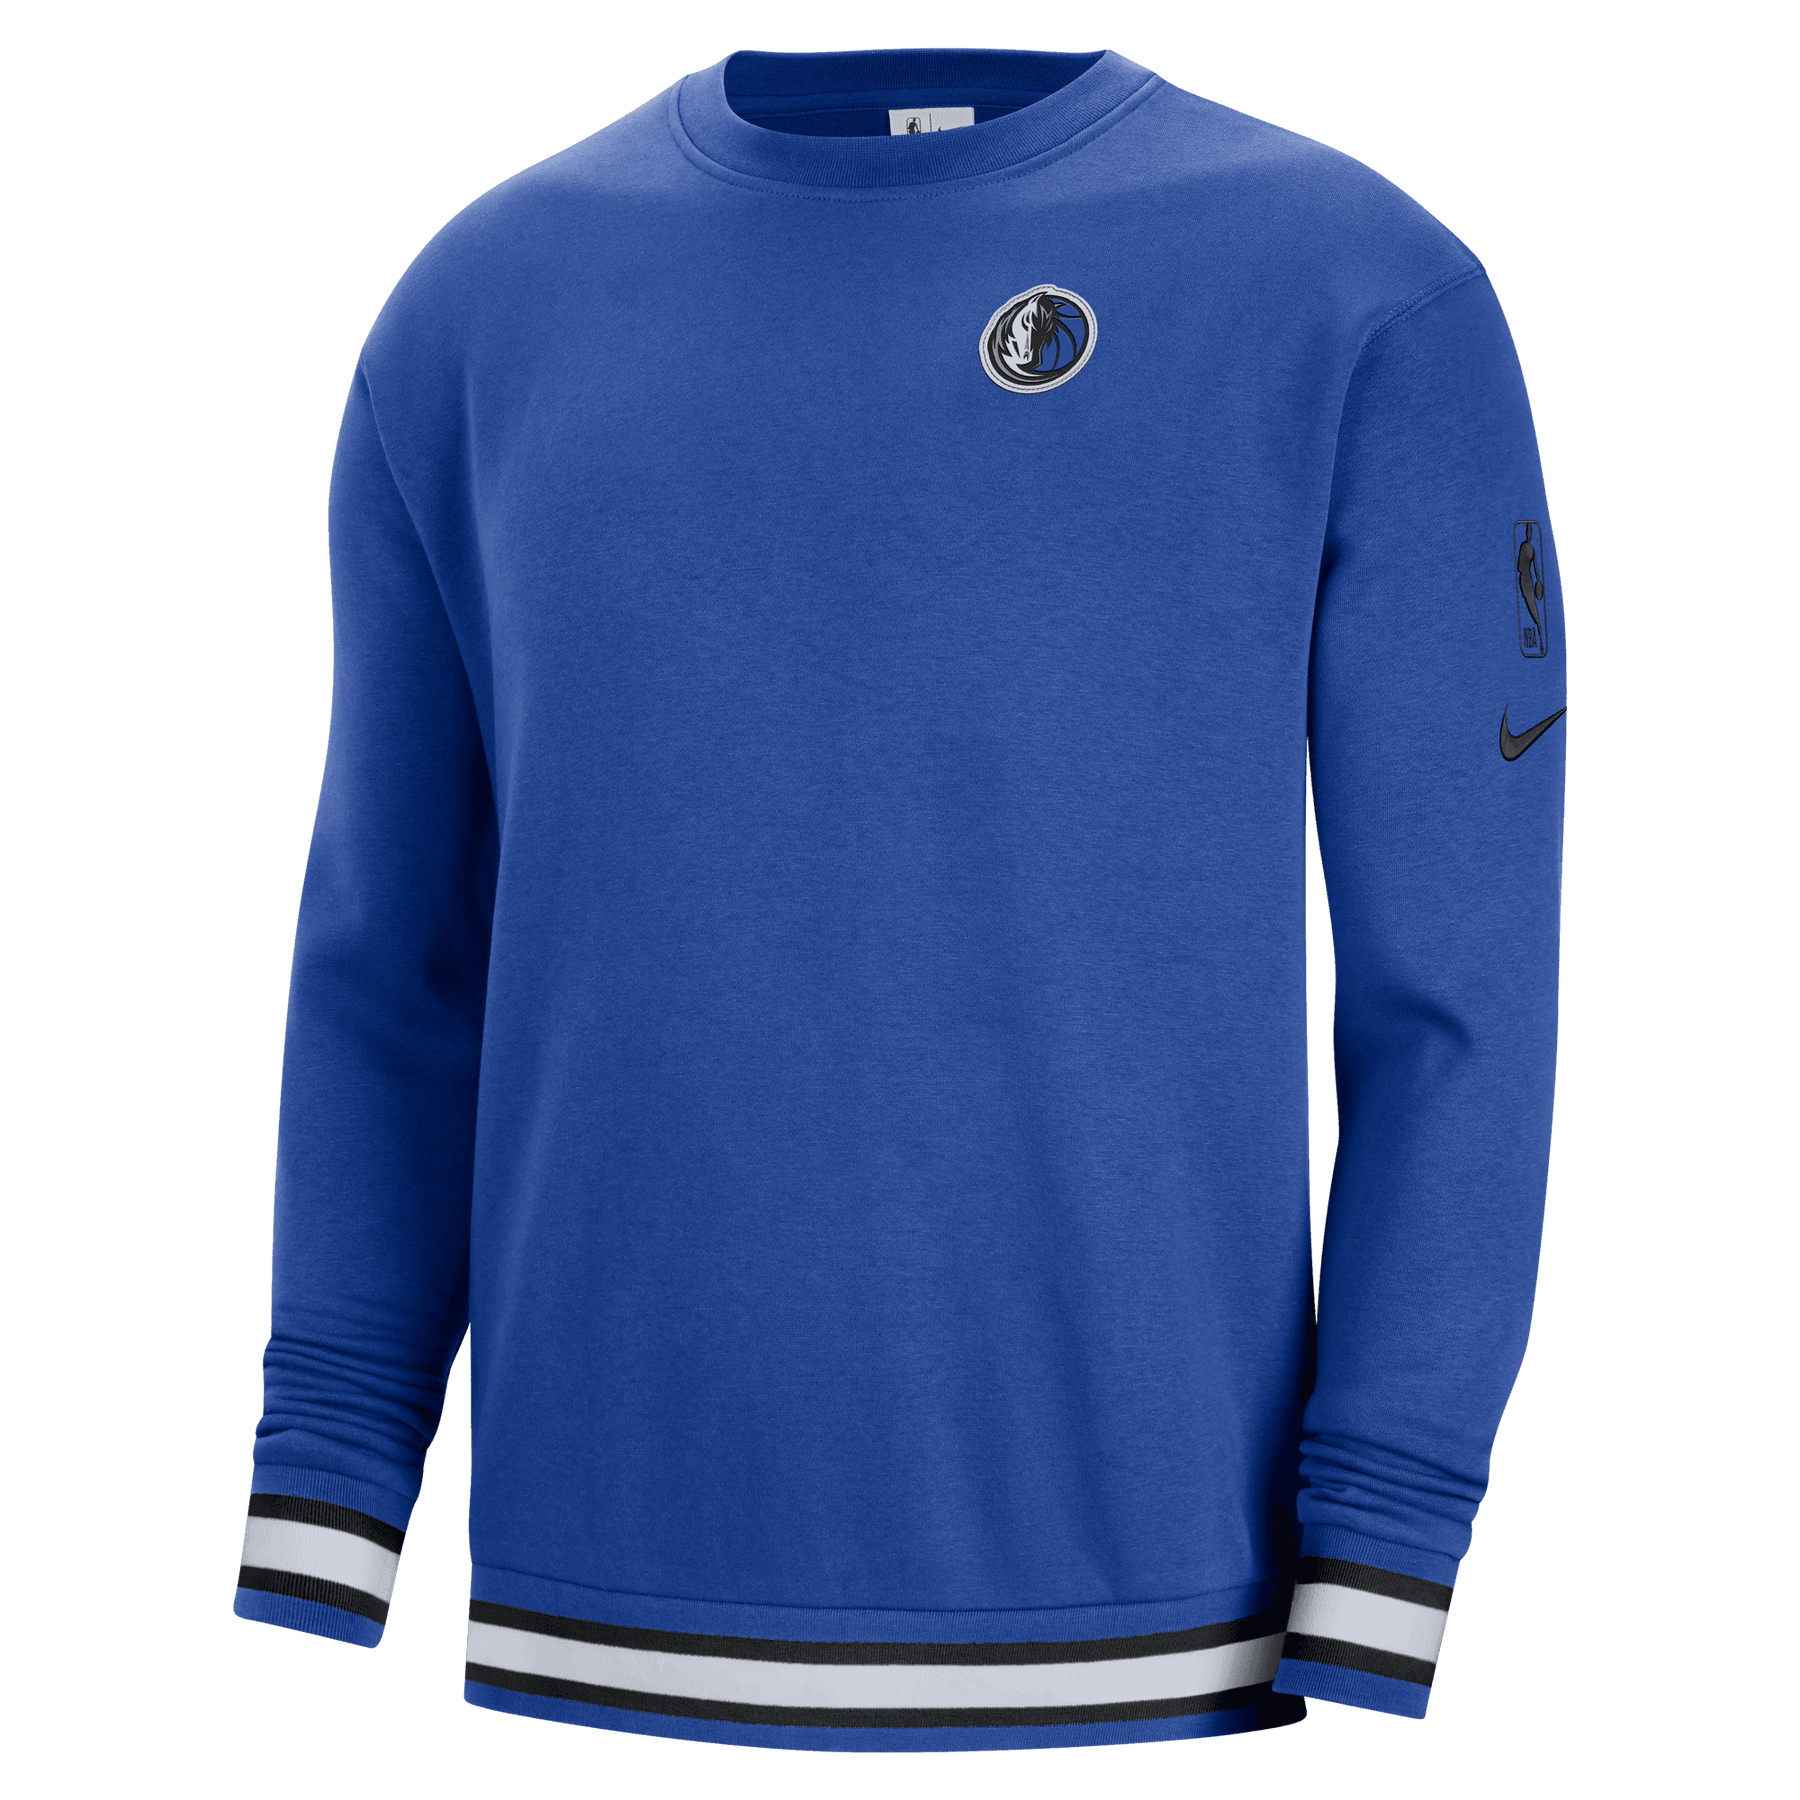 Vintage Dallas Mavericks Crewneck Sweatshirt Graphic Deadstock 